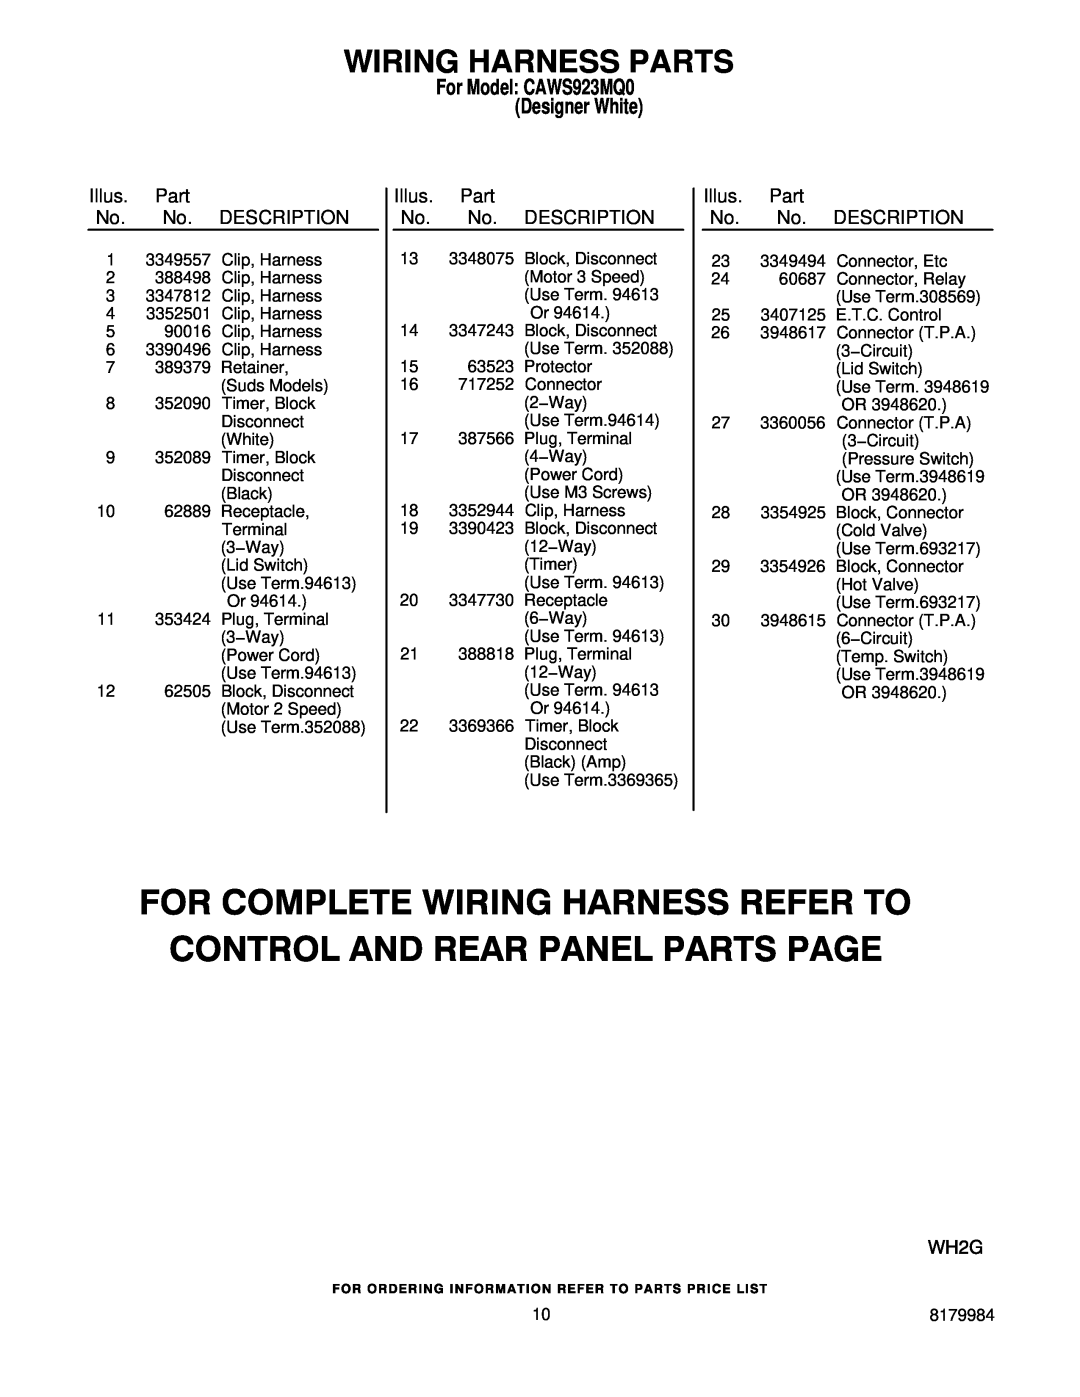 Crosley manual Illus. Part No. No. DESCRIPTION, Wiring Harness Parts, For Model CAWS923MQ0 Designer White 